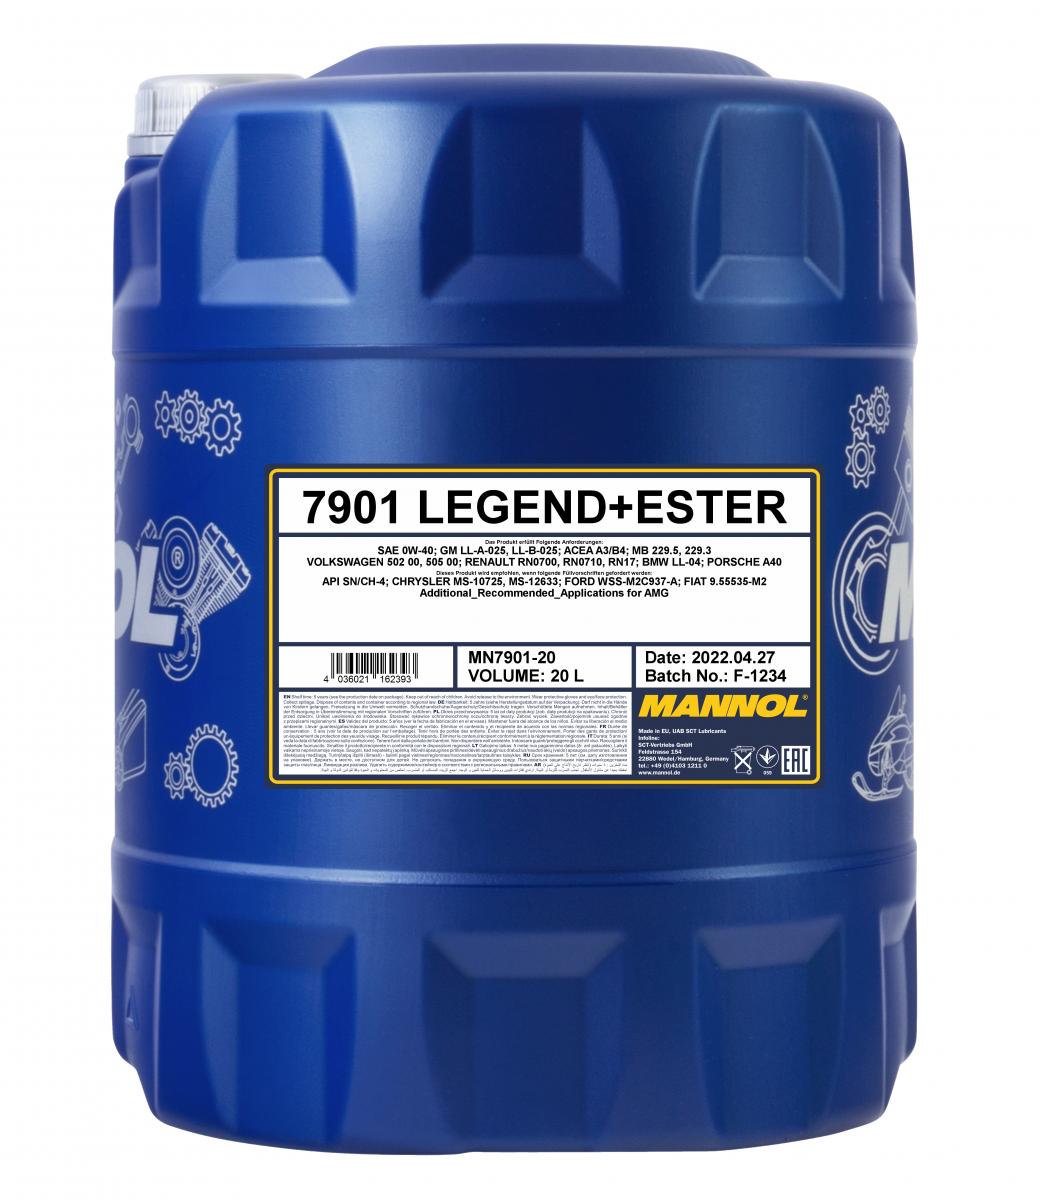 20 Liter MANNOL Legend Ester 0W-40 7901 SN/CH-4 Motoröl + 1x Ablasshahn